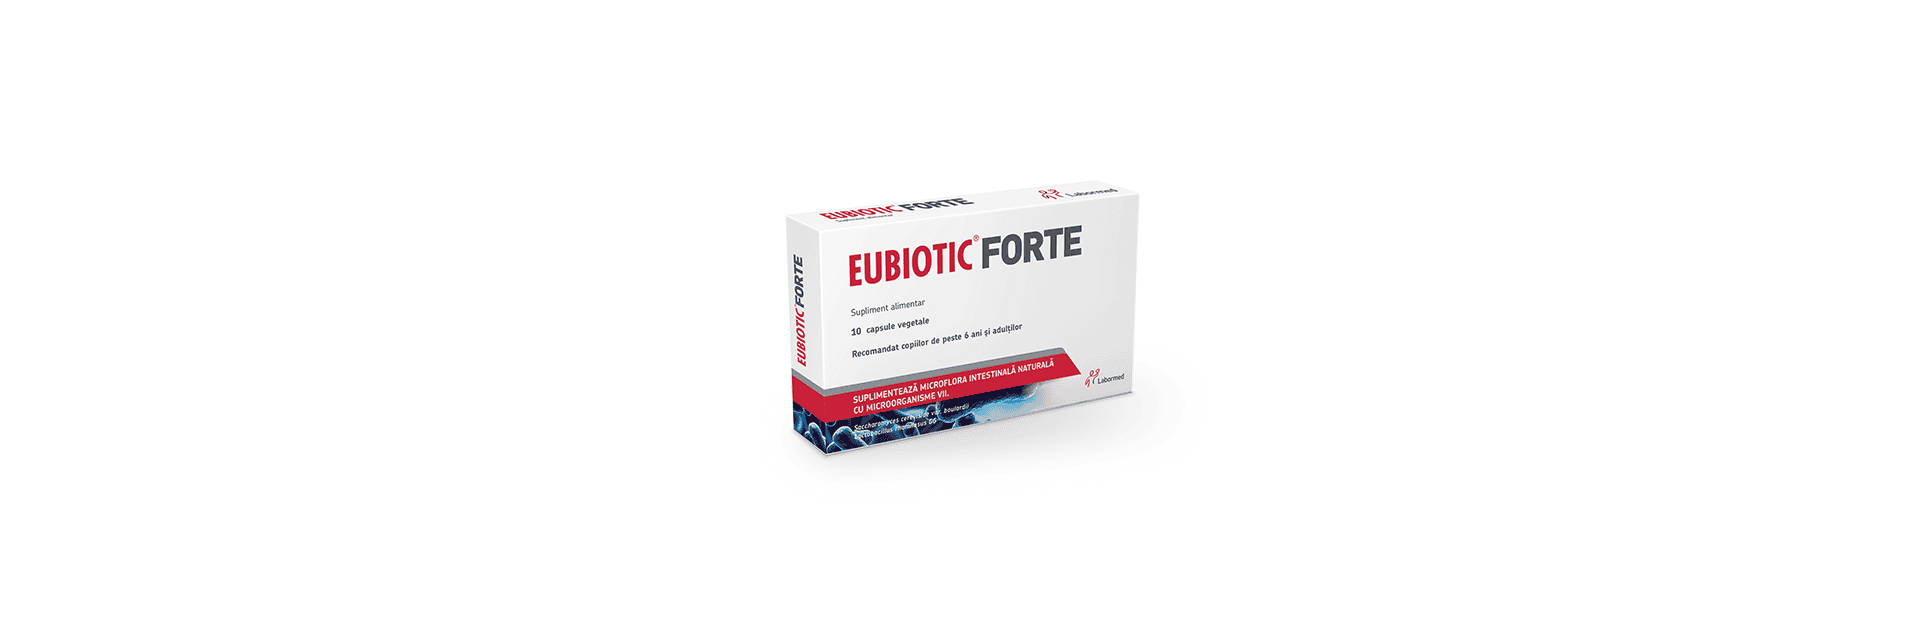 Imaginea arată o cutie a produsului "Eubiotic Forte", un supliment alimentar care conține 10 capsule vegetale.